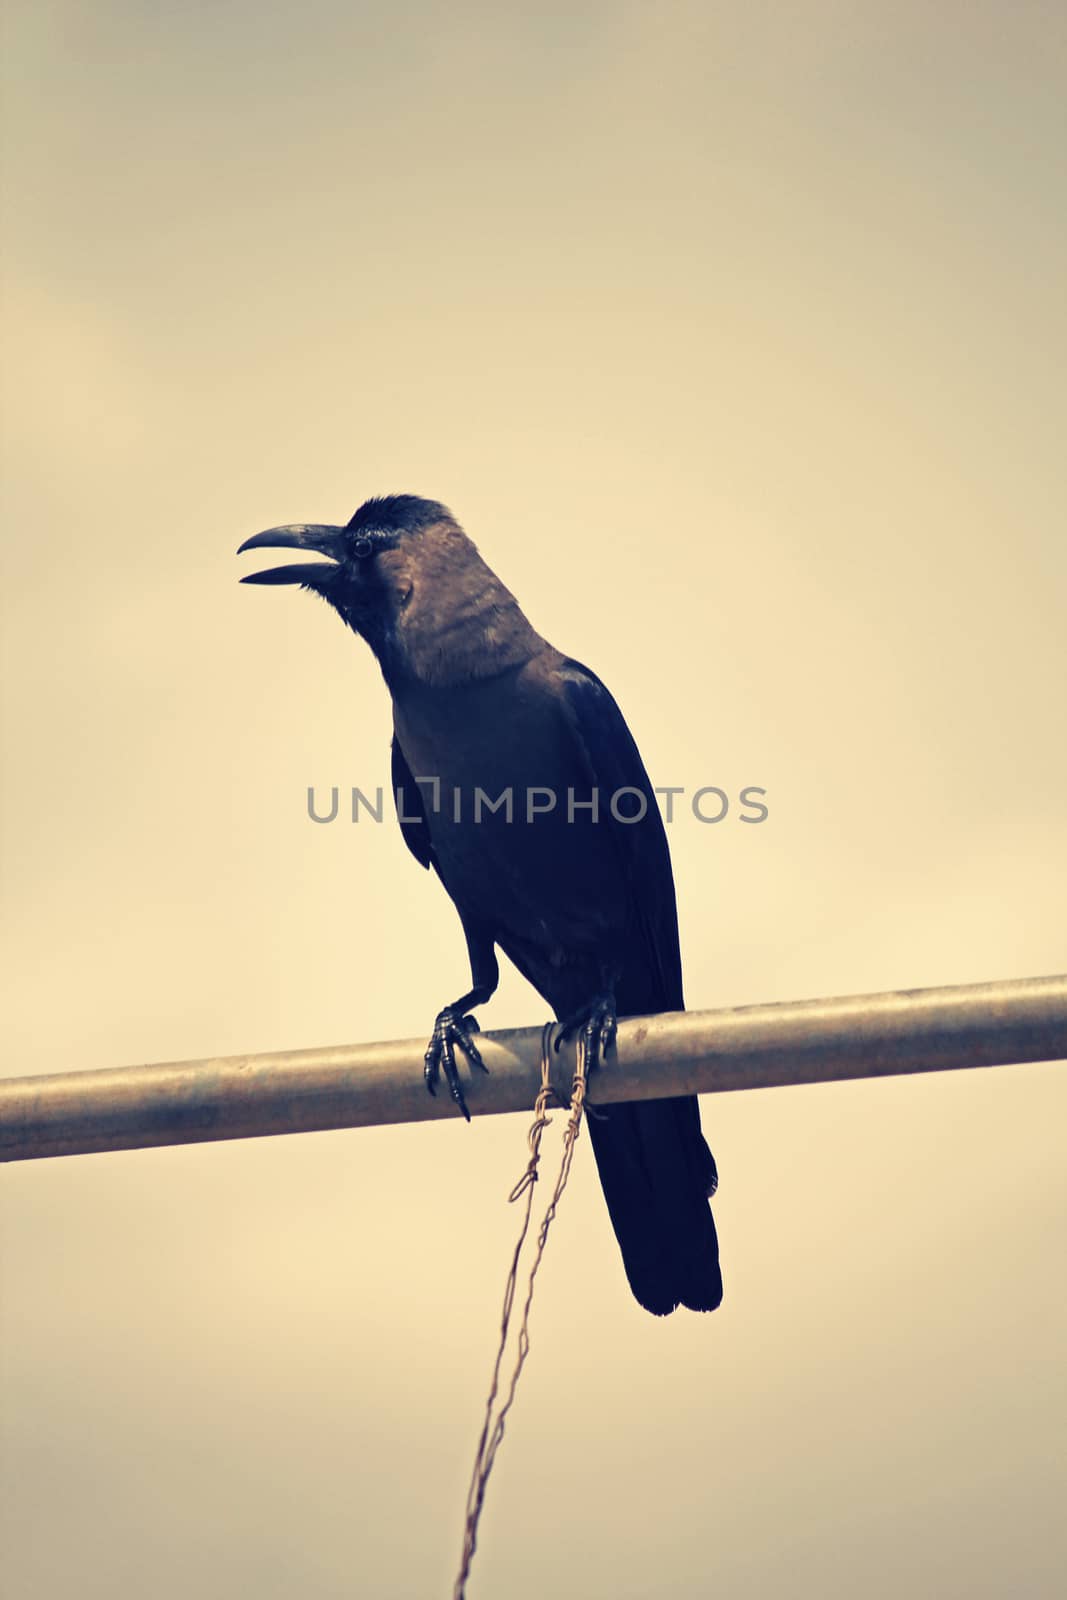 A house crow, Corvus Splendens